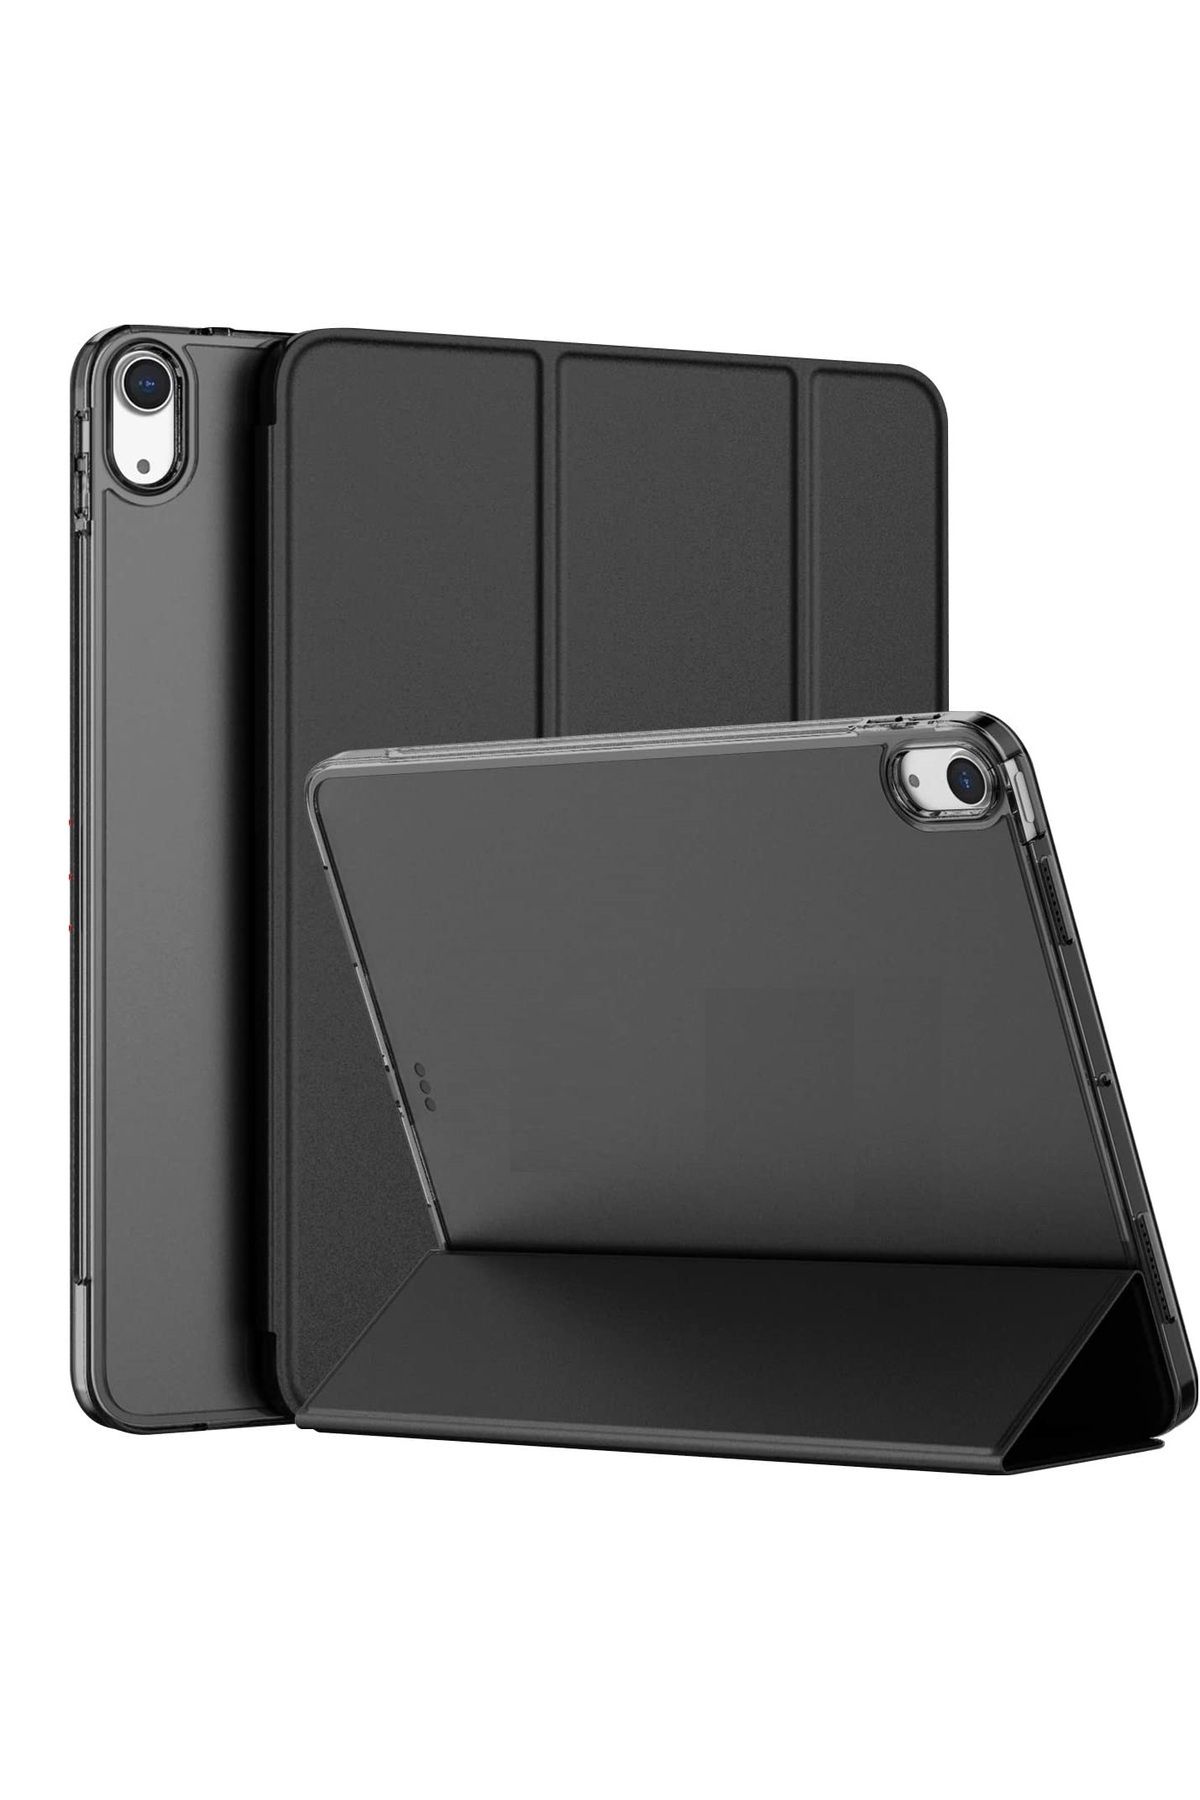 UnDePlus Apple Ipad Air 1 Air 2 9.7" Pu Deri Smart Standlı Case A1474 A1475 A1476 A1566 A1567 Siyah